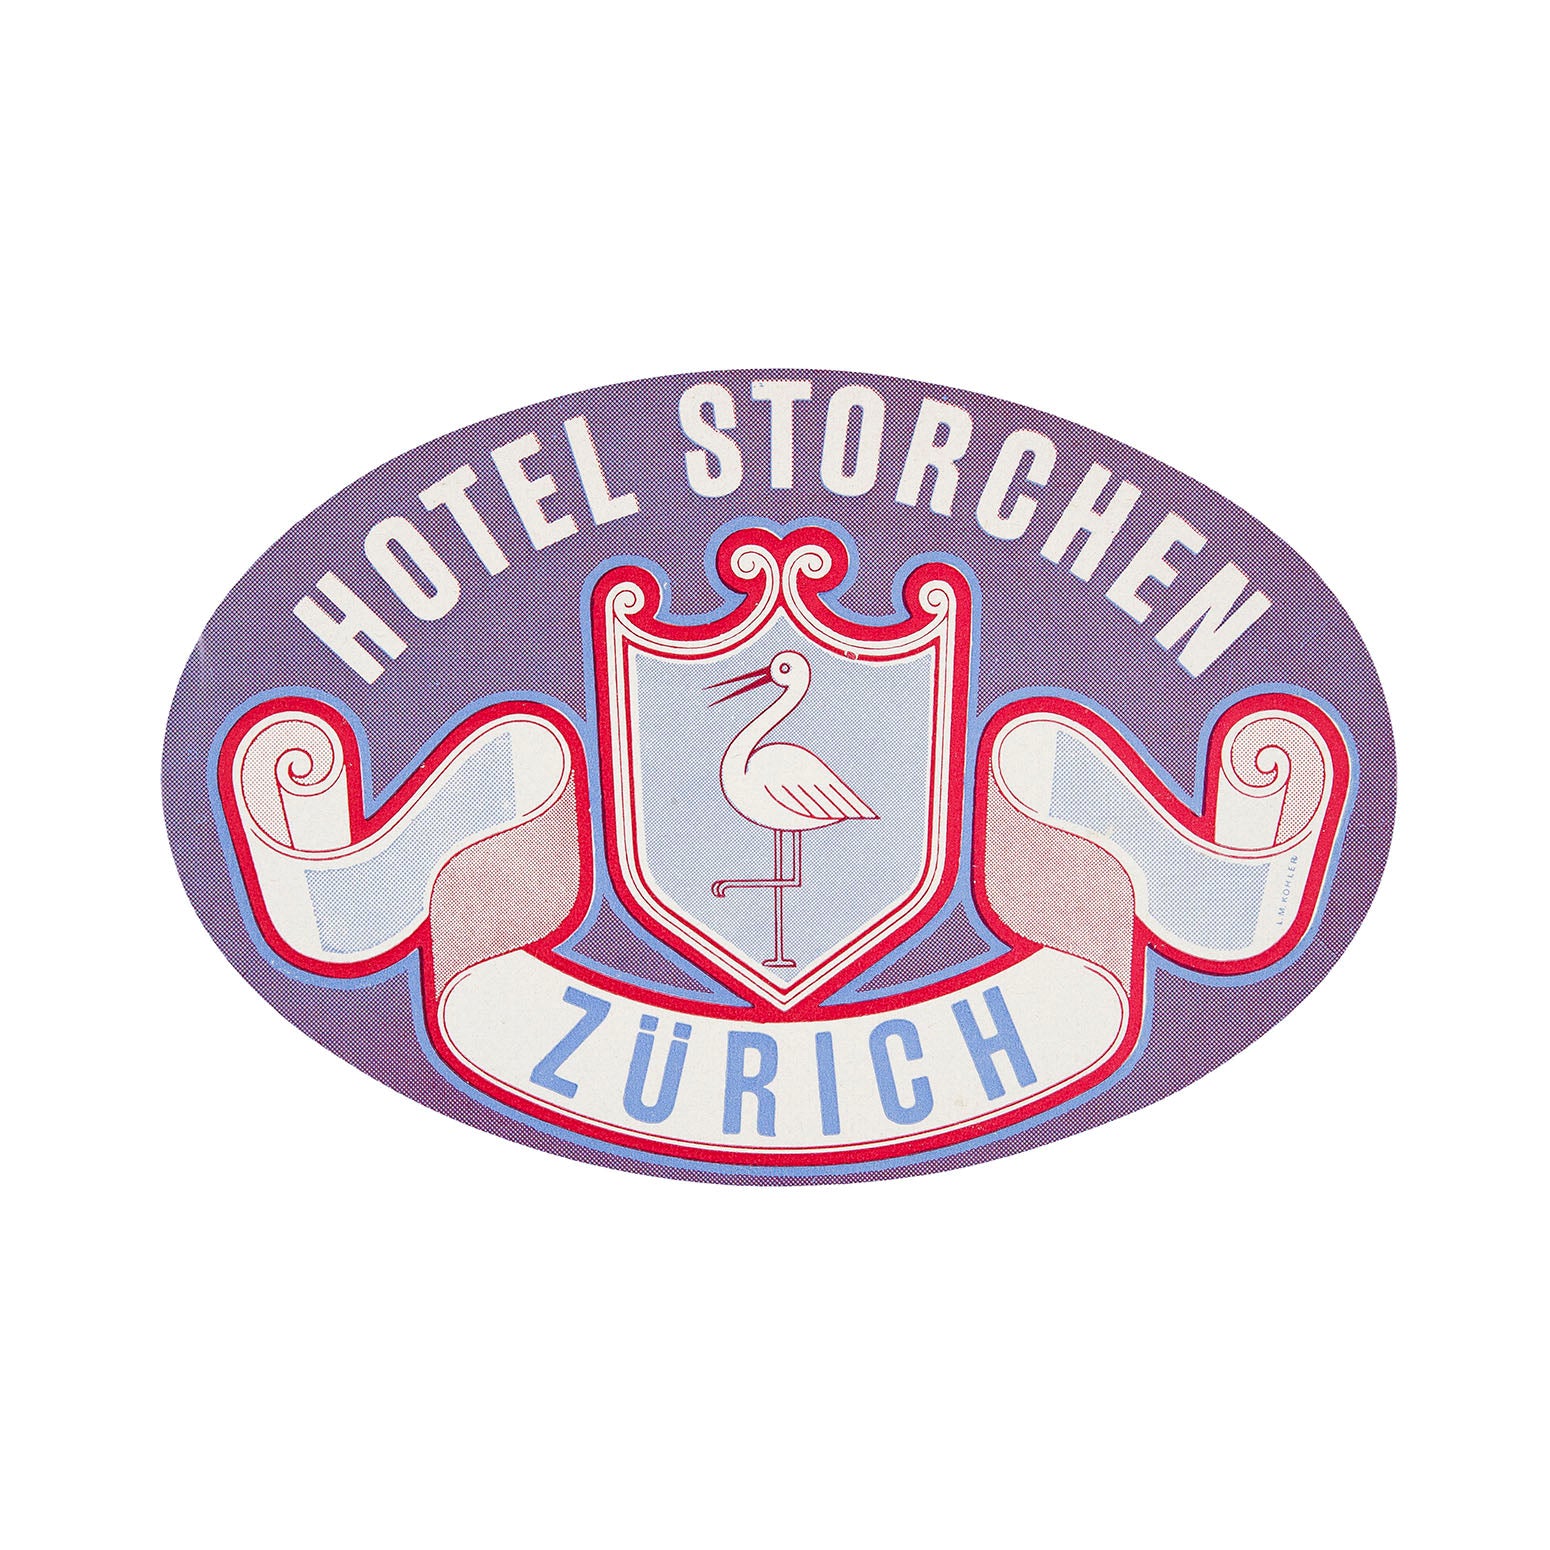 Hotel Storchen, Zurich (luggage label)